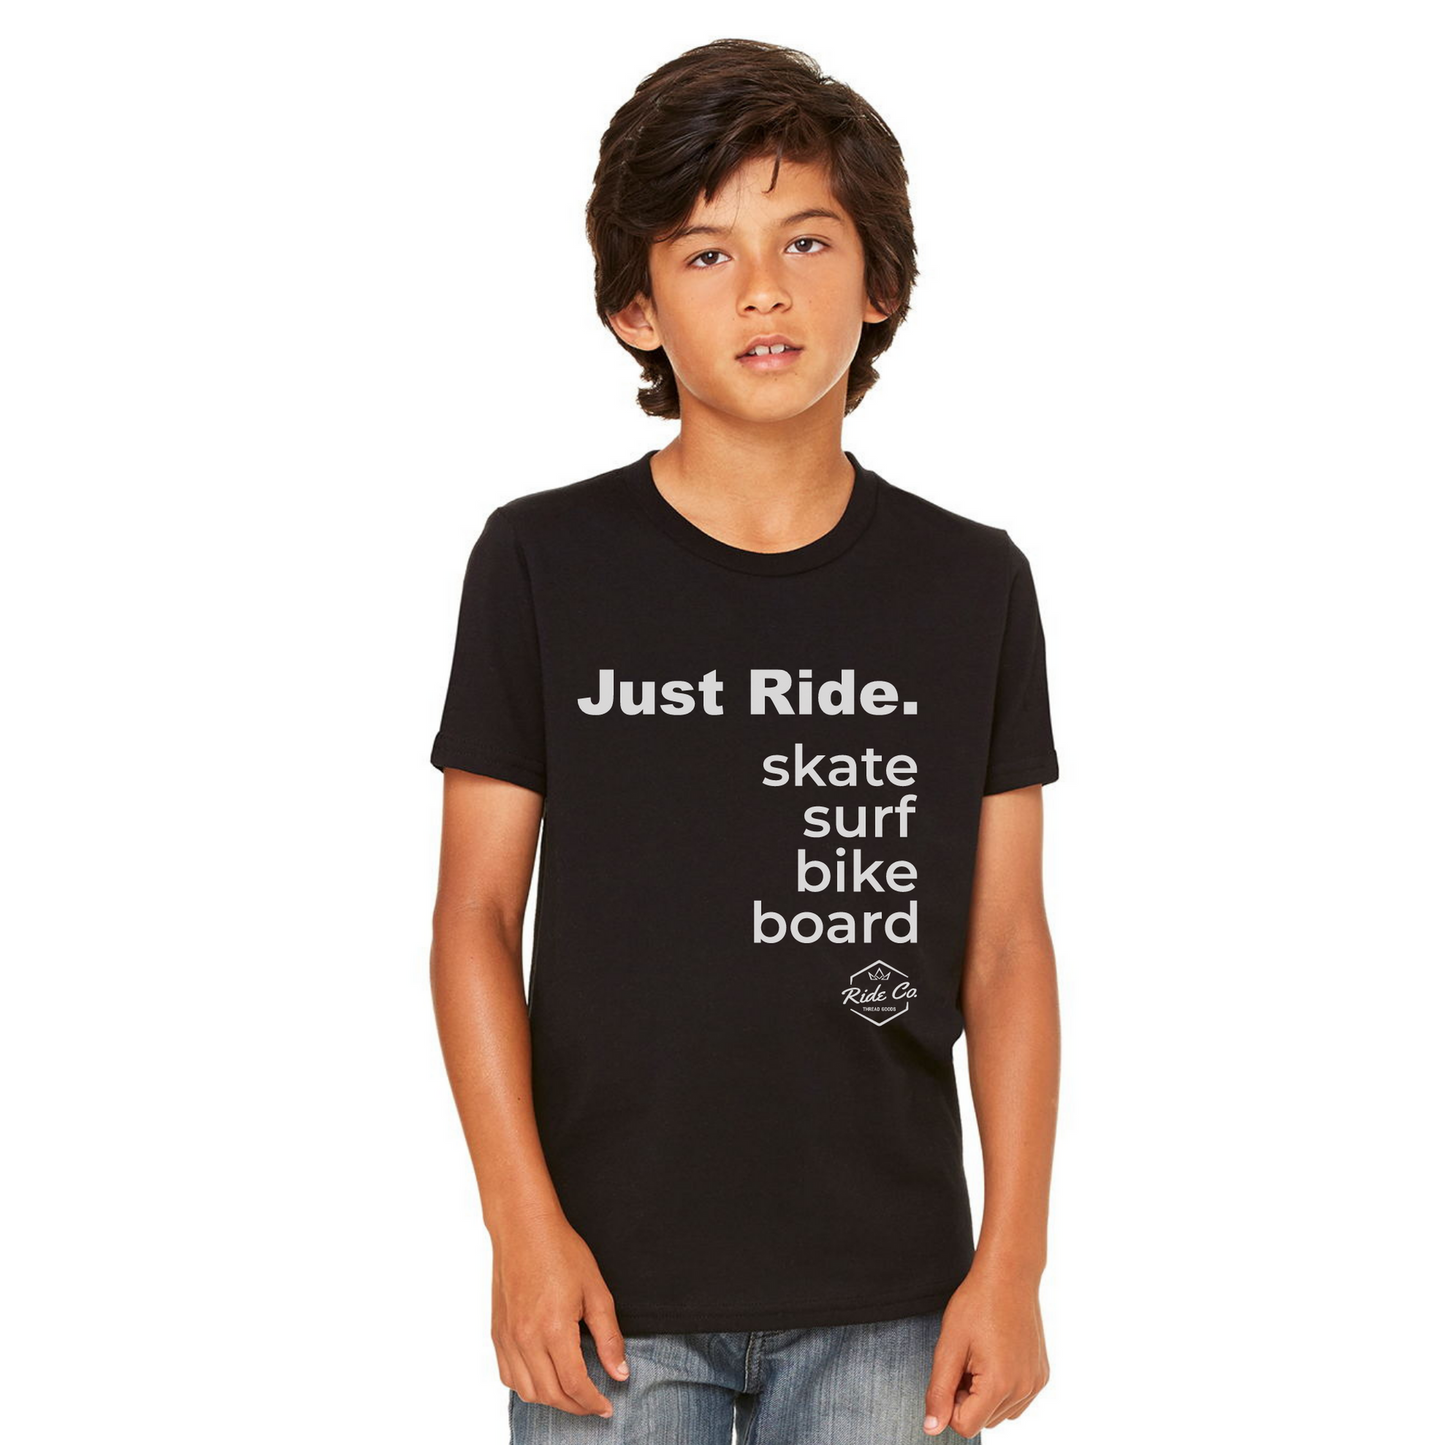 Ride Co. Solo viaja. Camiseta juvenil